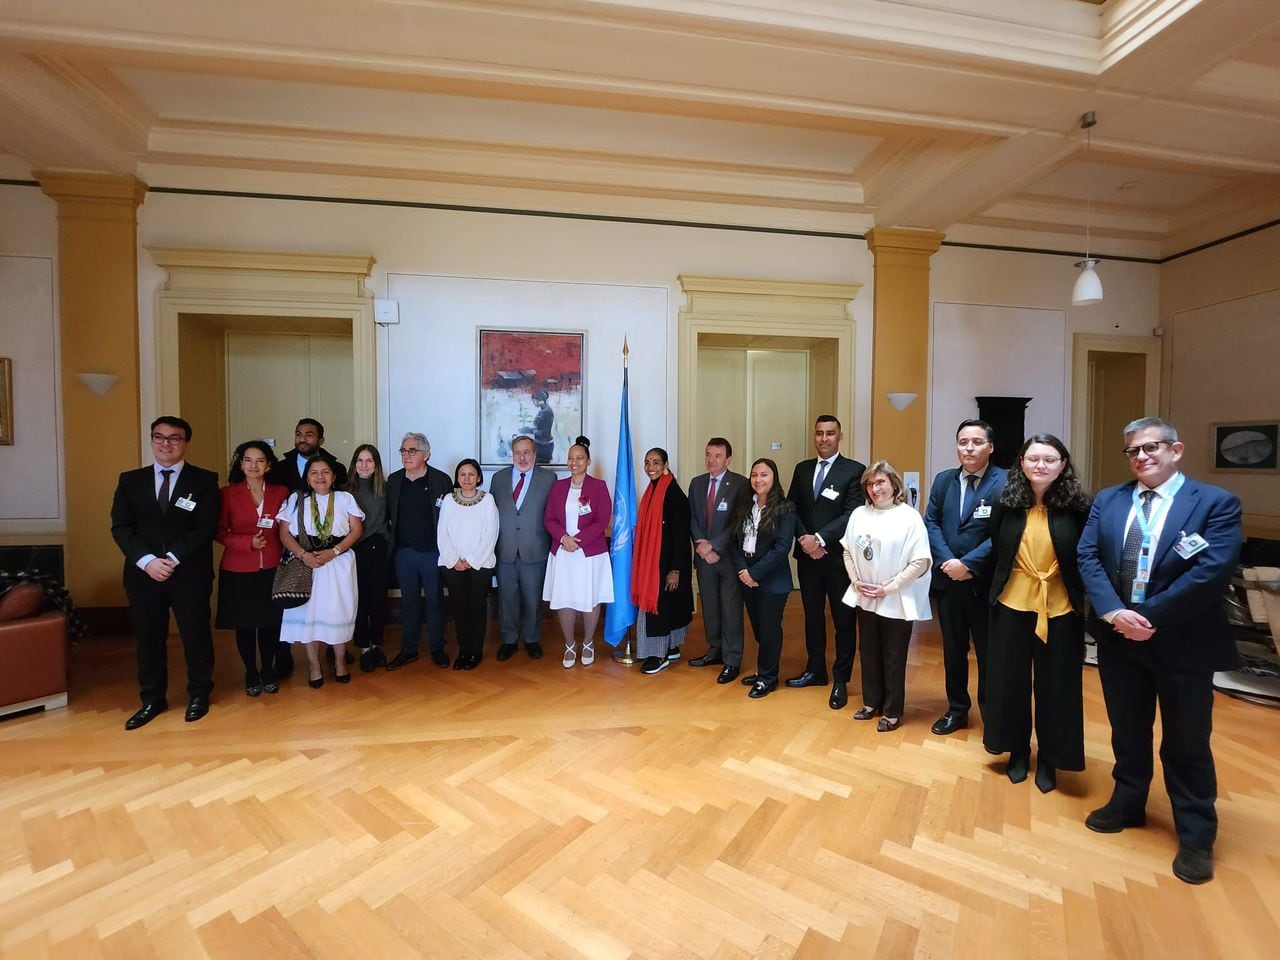 Delegación del Gobierno Nacional que presentó la sustentación del VI Informe ante el Comité contra la Tortura de la Organización de las Naciones Unidas (ONU) en Ginebra, Suiza.